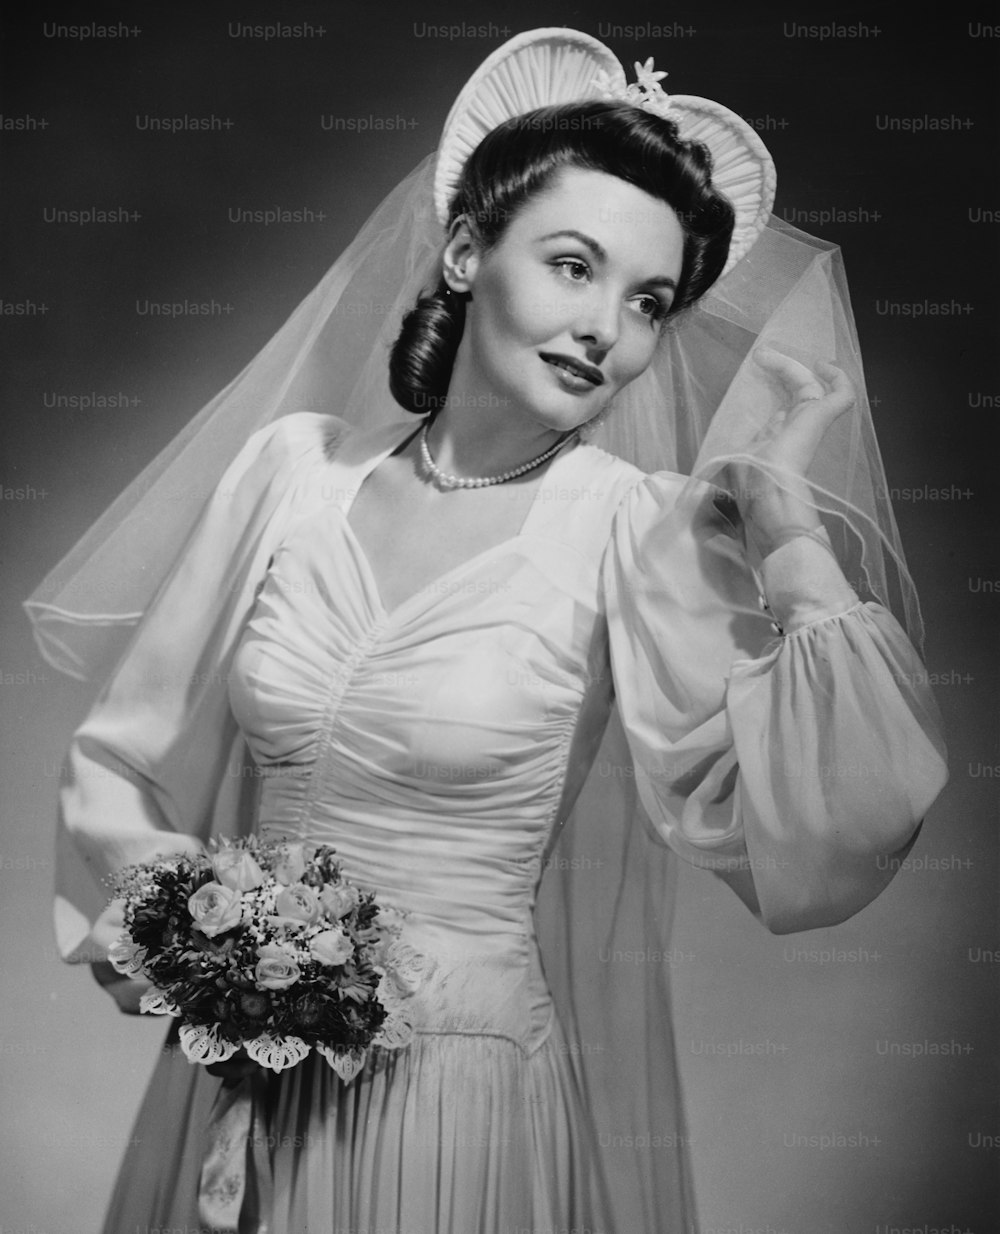 ベールとブーケを持った若い花嫁、1940年頃。 (写真提供:George Marks/Retrofile/Getty Images)